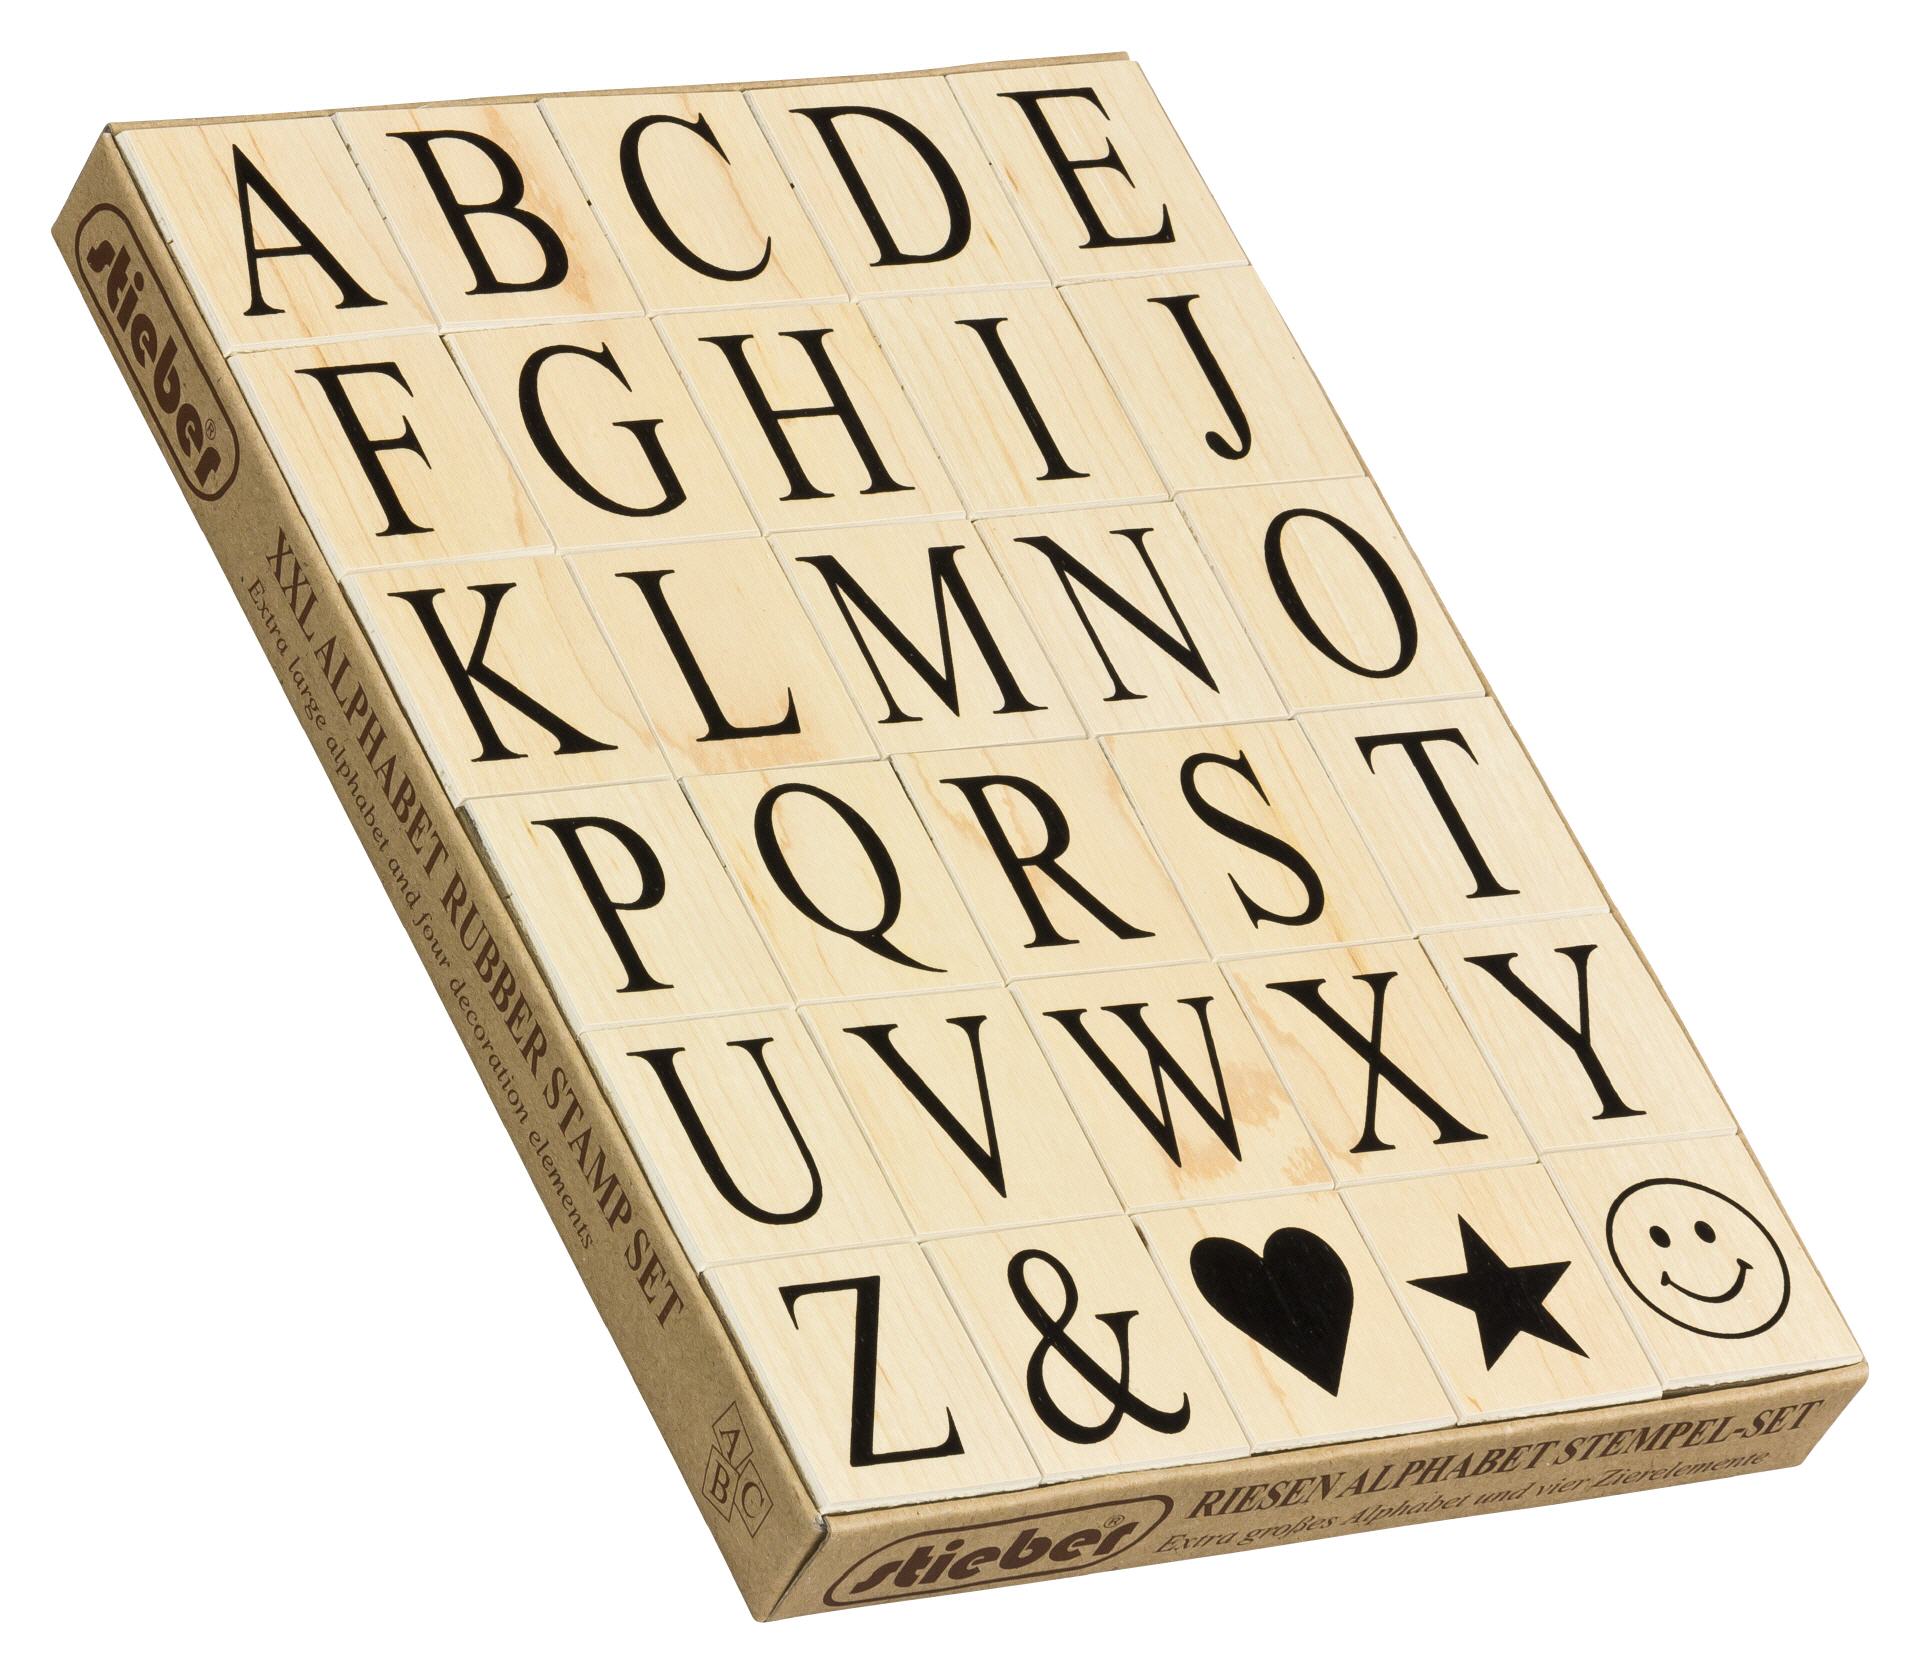 ROSENICE Holz Stempelset Alphabet Buchstaben Stamp Gummi Stempel Set 70pcs